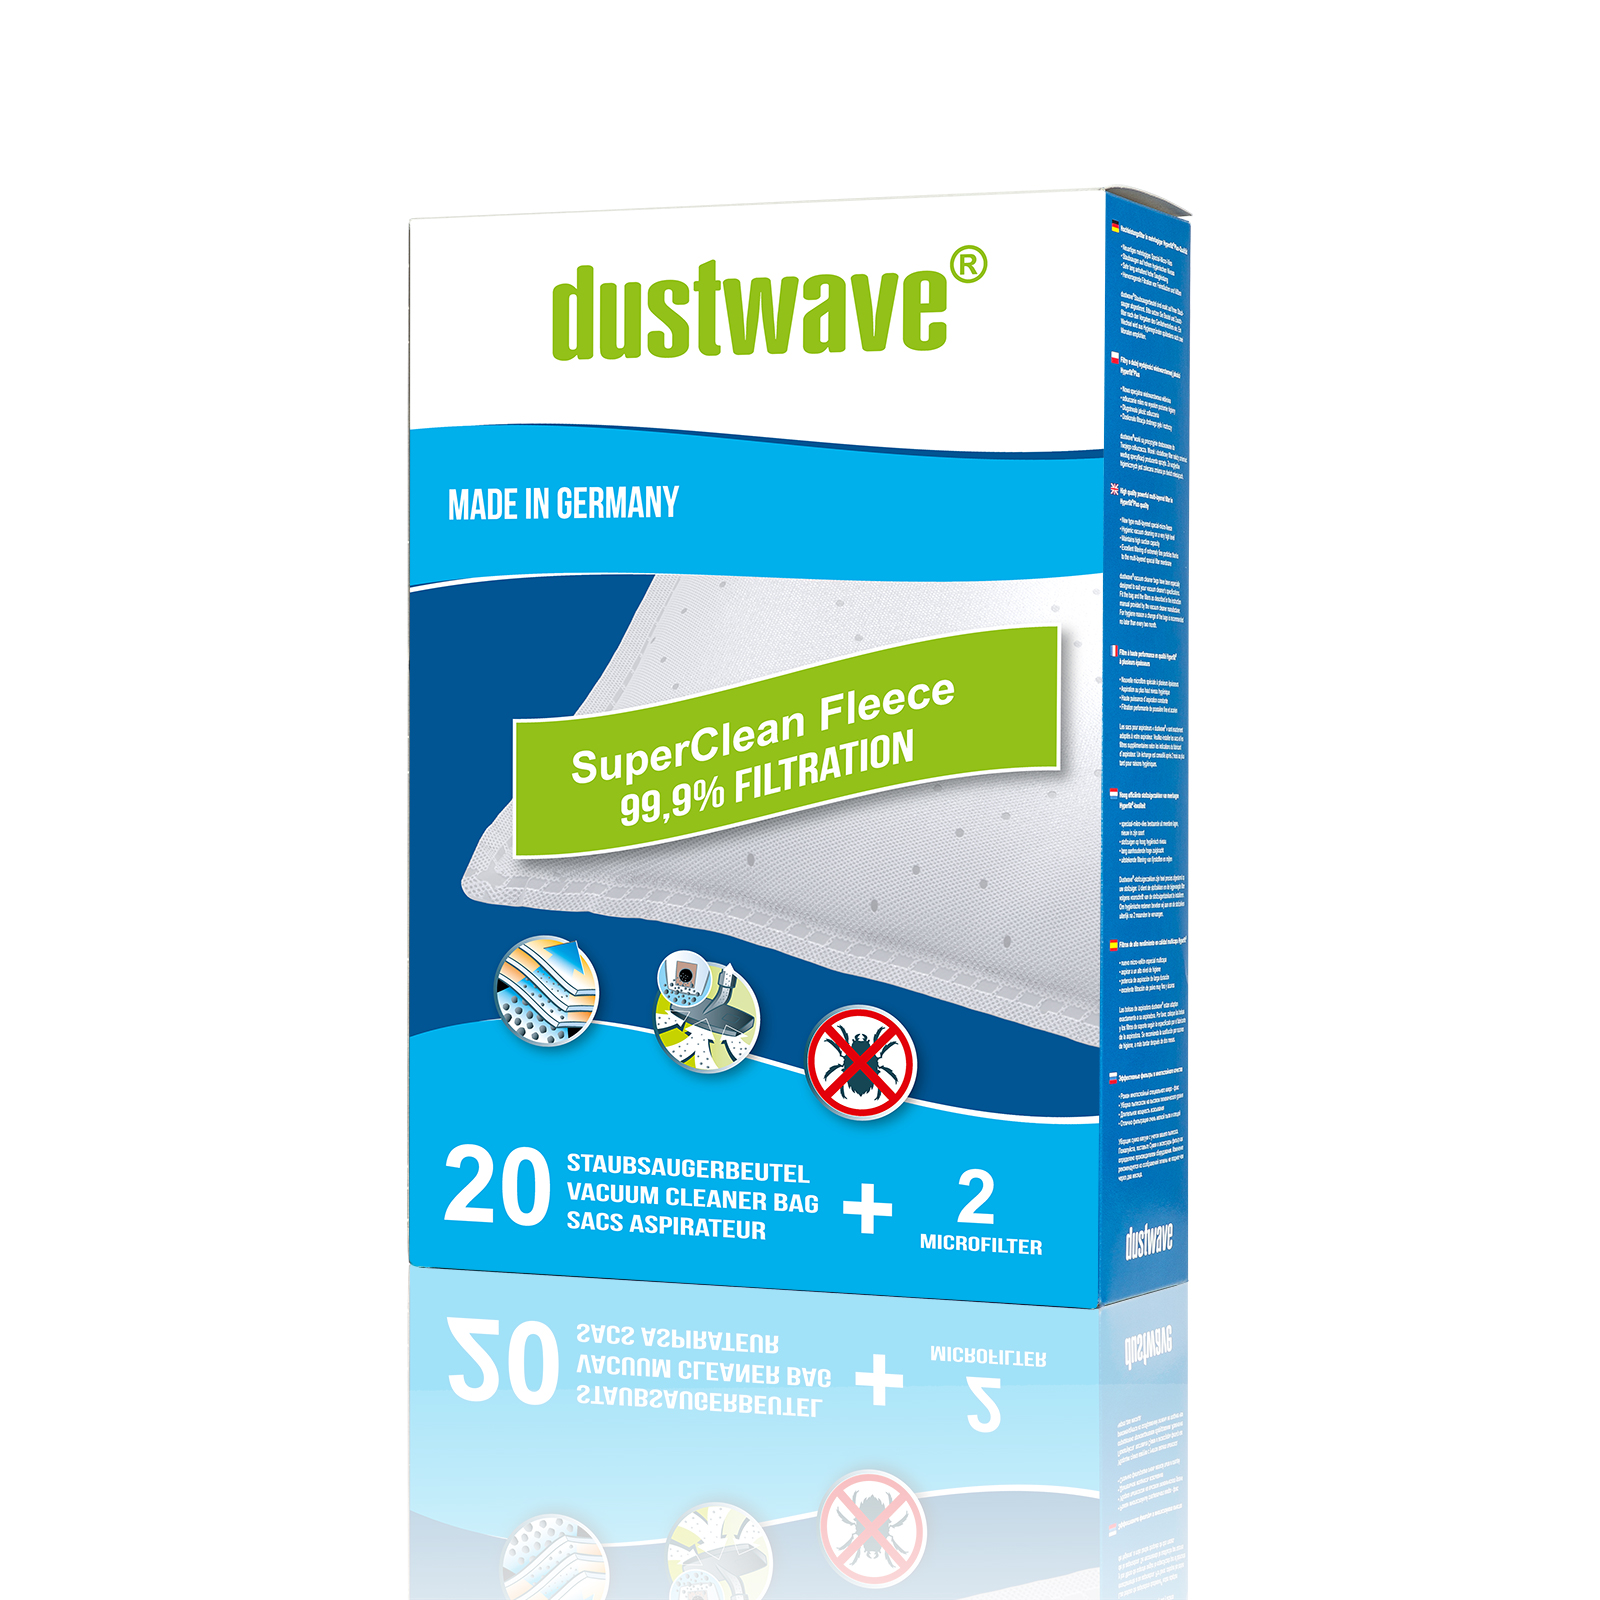 Dustwave® 10 Staubsaugerbeutel für Hoover PL C1800 001 - hocheffizient, mehrlagiges Mikrovlies mit Hygieneverschluss - Made in Germany